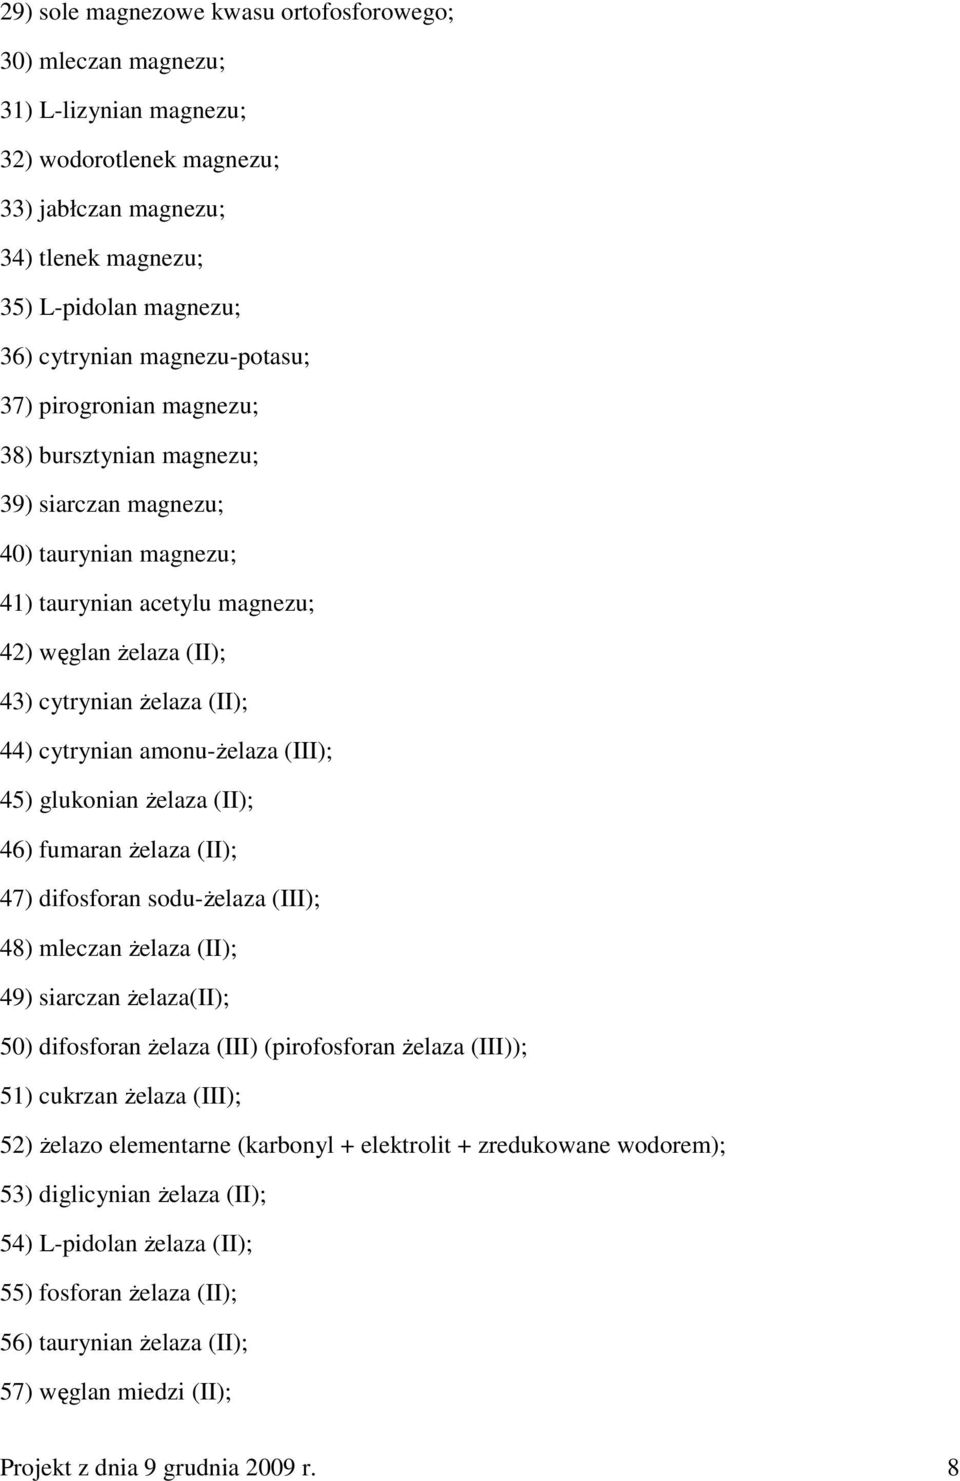 cytrynian amonu-ŝelaza (III); 45) glukonian Ŝelaza (II); 46) fumaran Ŝelaza (II); 47) difosforan sodu-ŝelaza (III); 48) mleczan Ŝelaza (II); 49) siarczan Ŝelaza(II); 50) difosforan Ŝelaza (III)